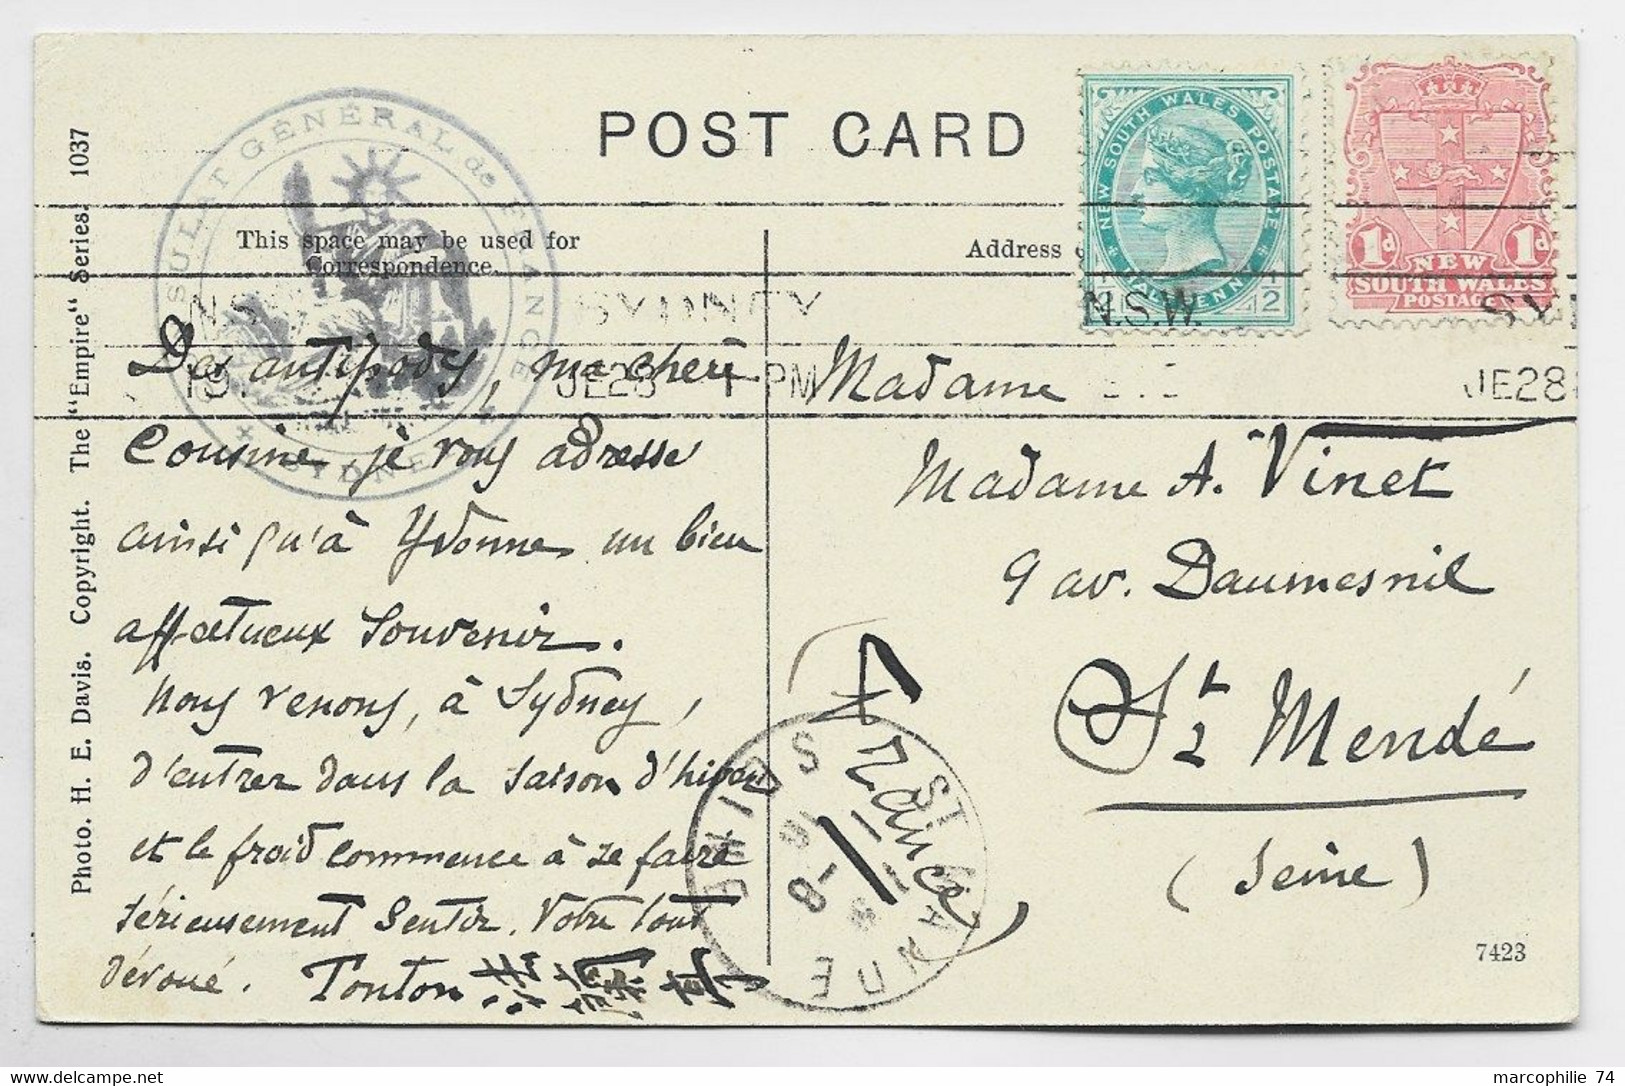 AUSTRALIA SOUTH WALES 1D+1/2C POST CARD SYDNEY 1916+ CONSULAT GENERAL DE FRANCE SYDNEY - Storia Postale